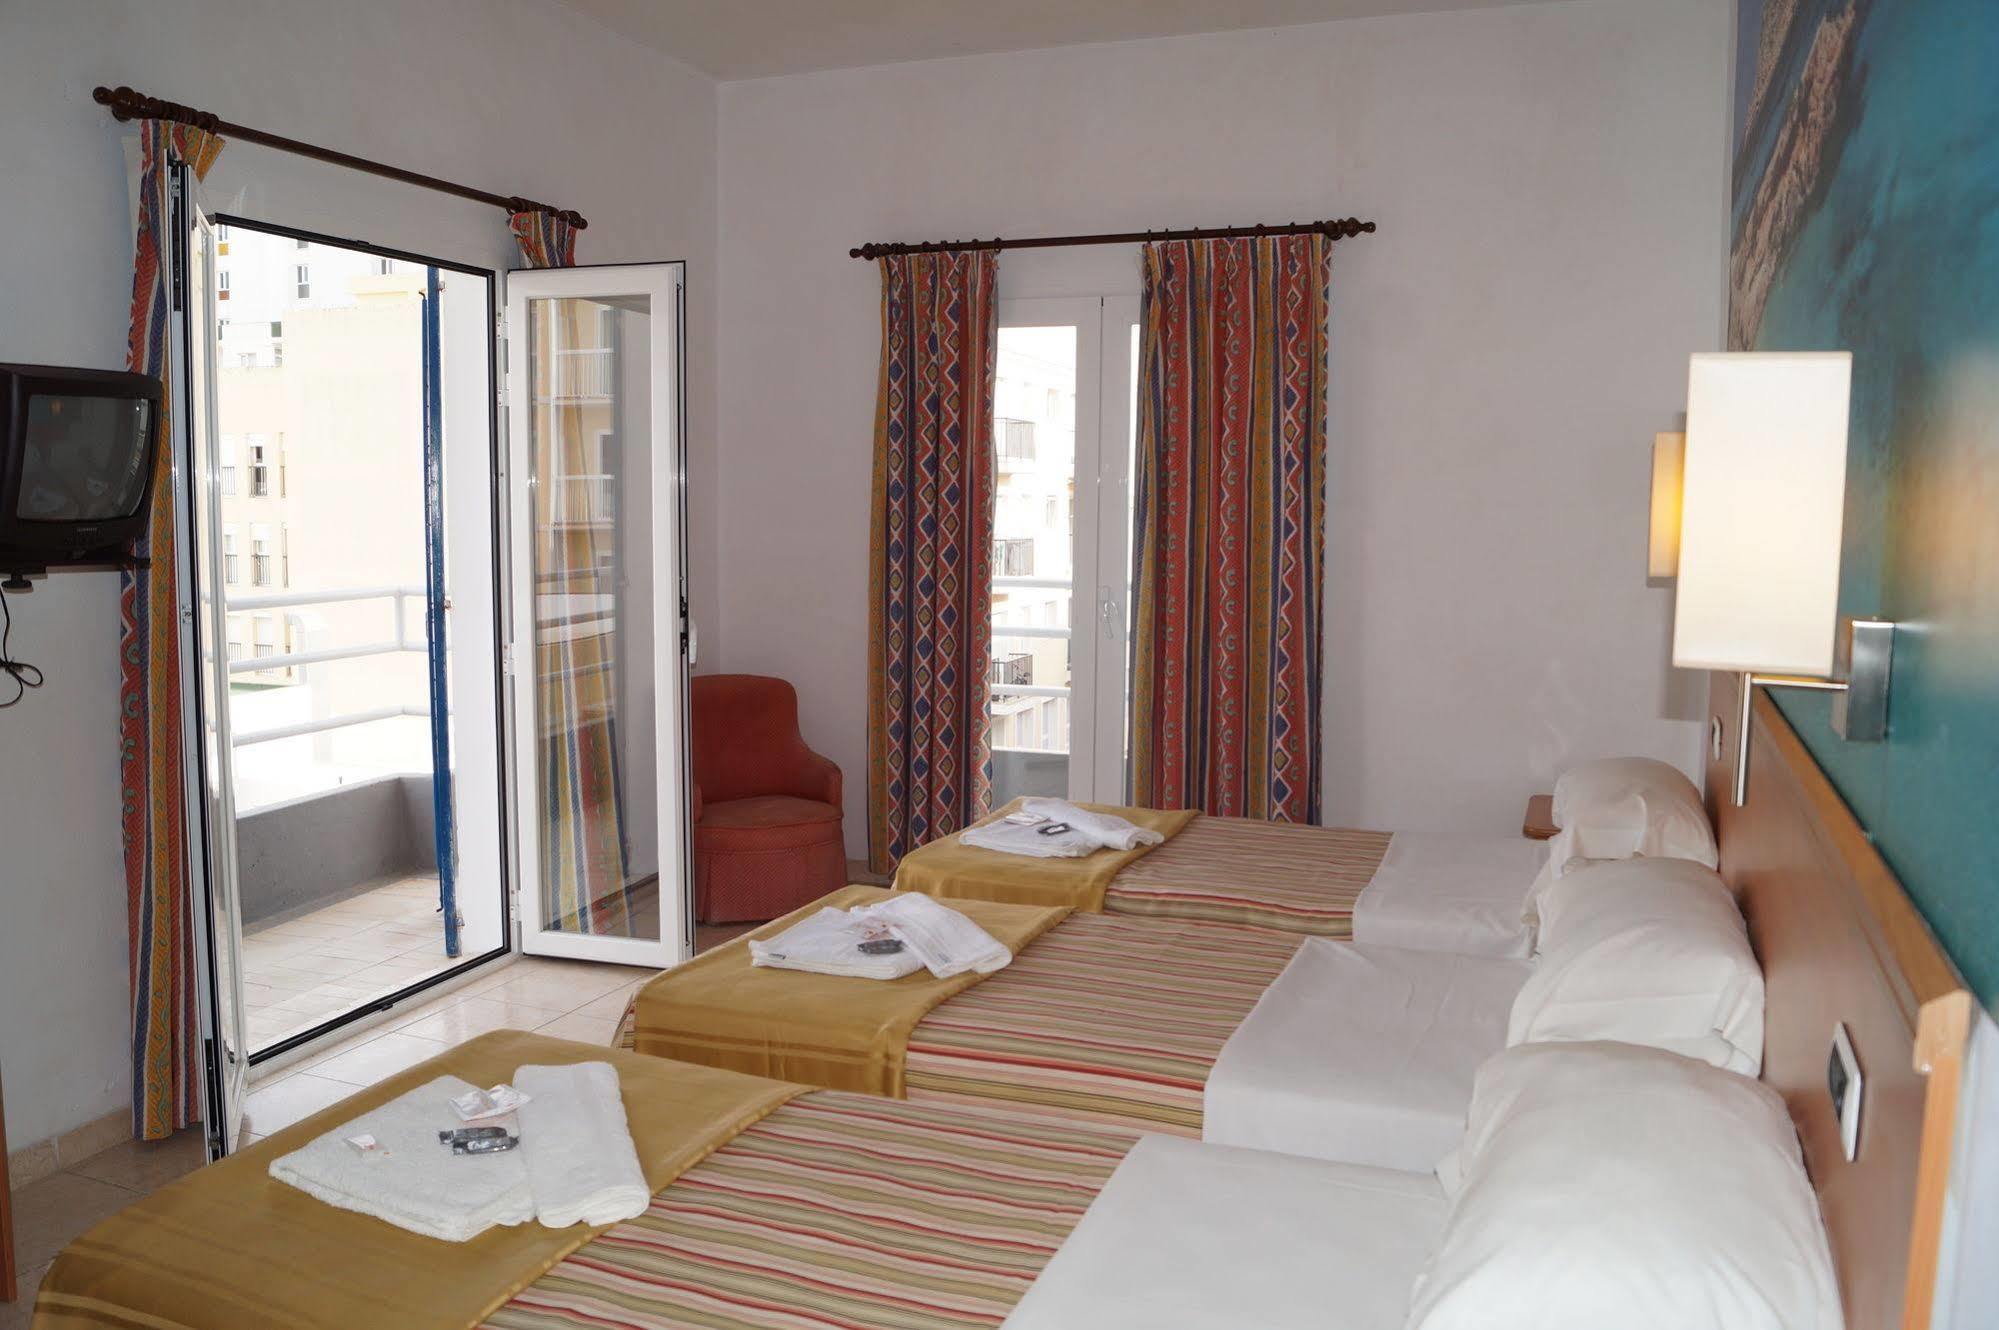 Hotel Vedra Sant Antoni de Portmany Extérieur photo